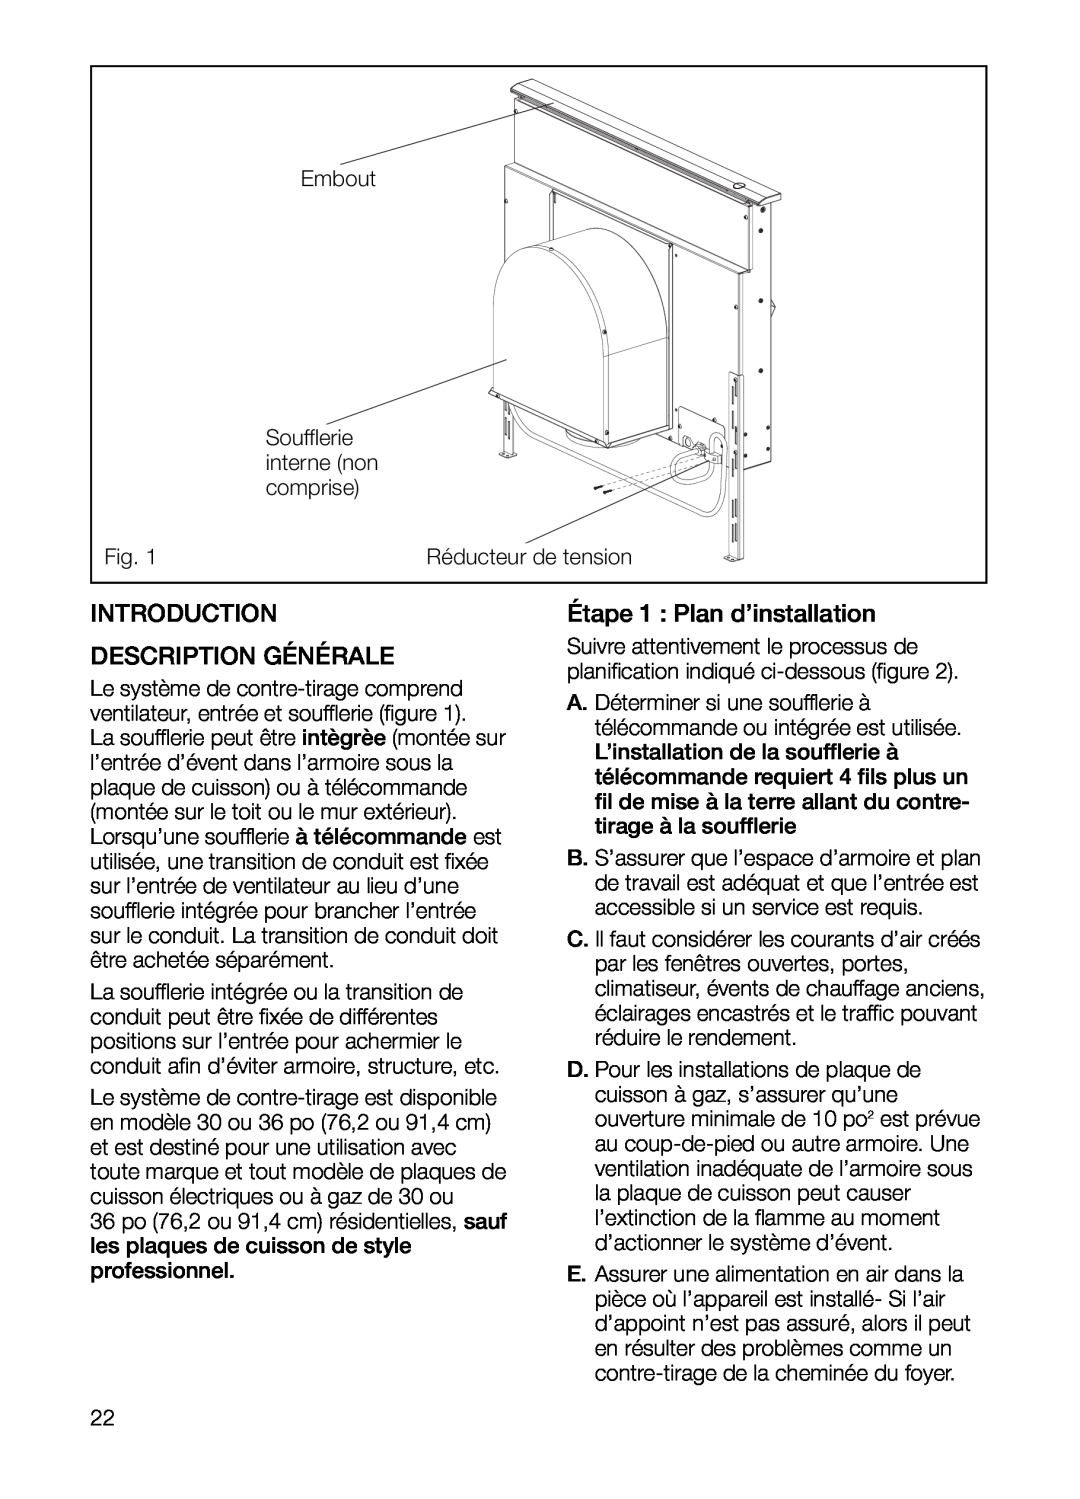 Bosch Appliances DHG6023UC Étape 1 Plan d’installation, Description Générale, Introduction, Embout, interne non, comprise 